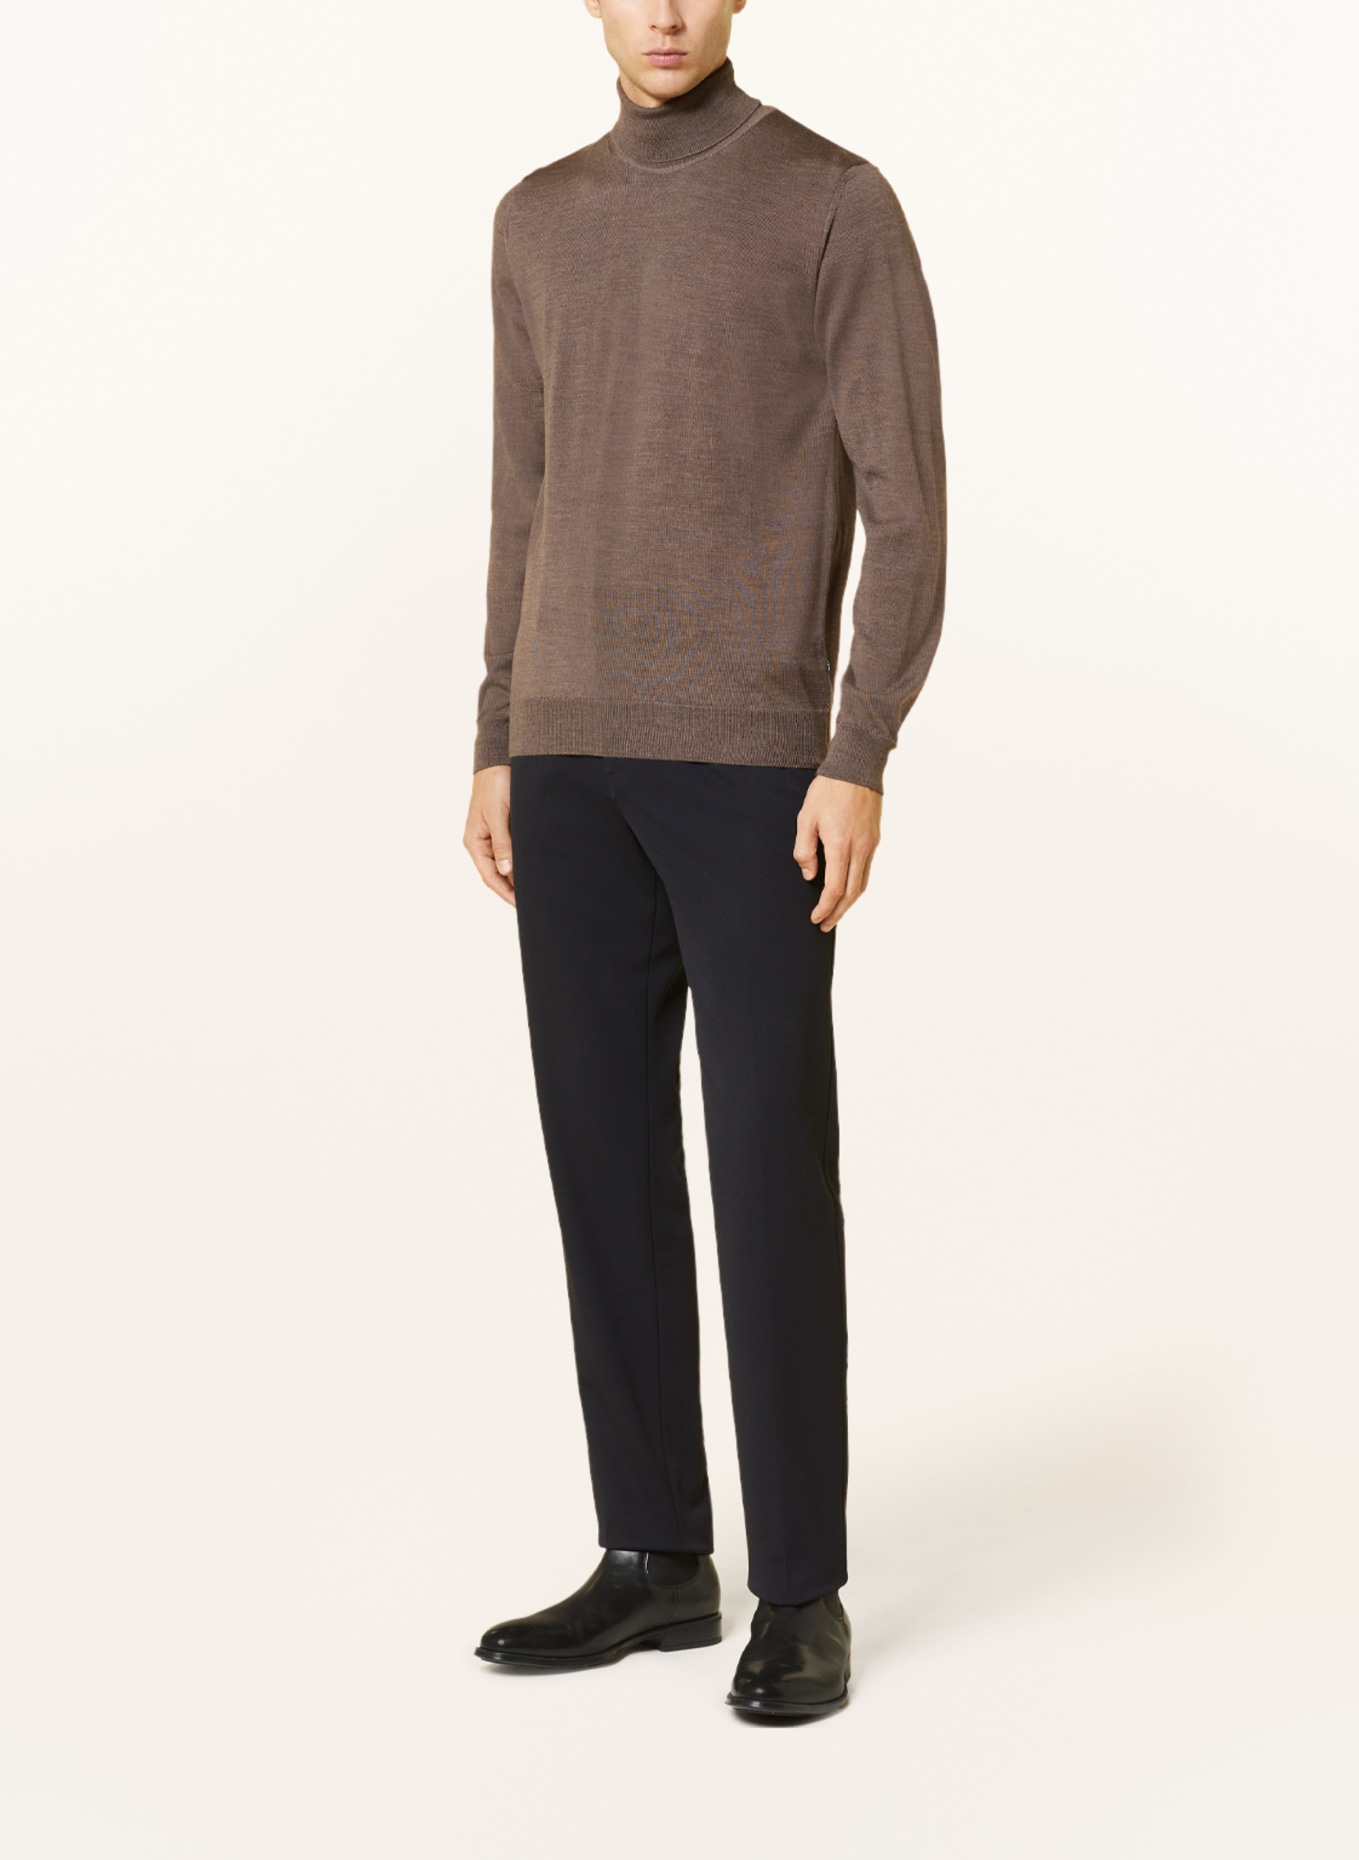 SAND COPENHAGEN Turtleneck sweater, Color: DARK BROWN (Image 2)